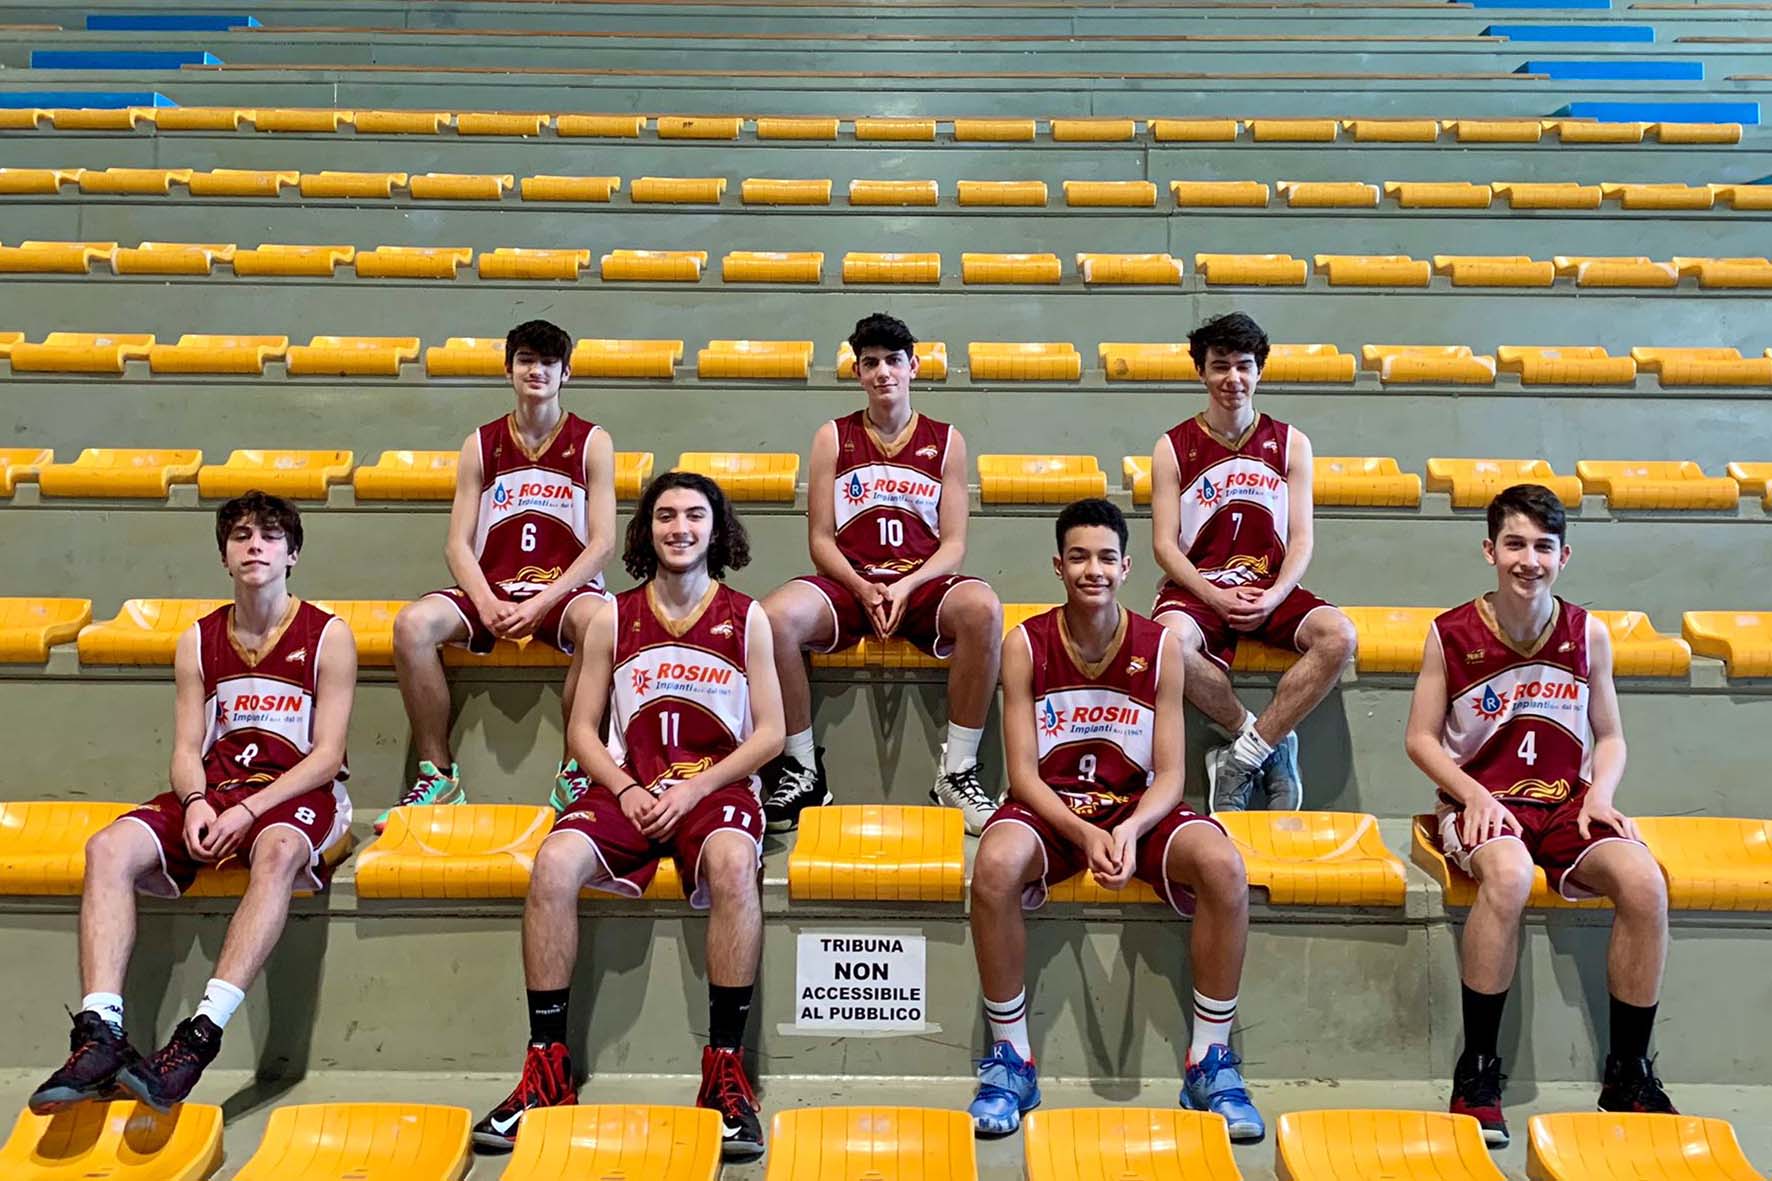 La Scuola Basket Arezzo all’esordio nel campionato regionale Under18